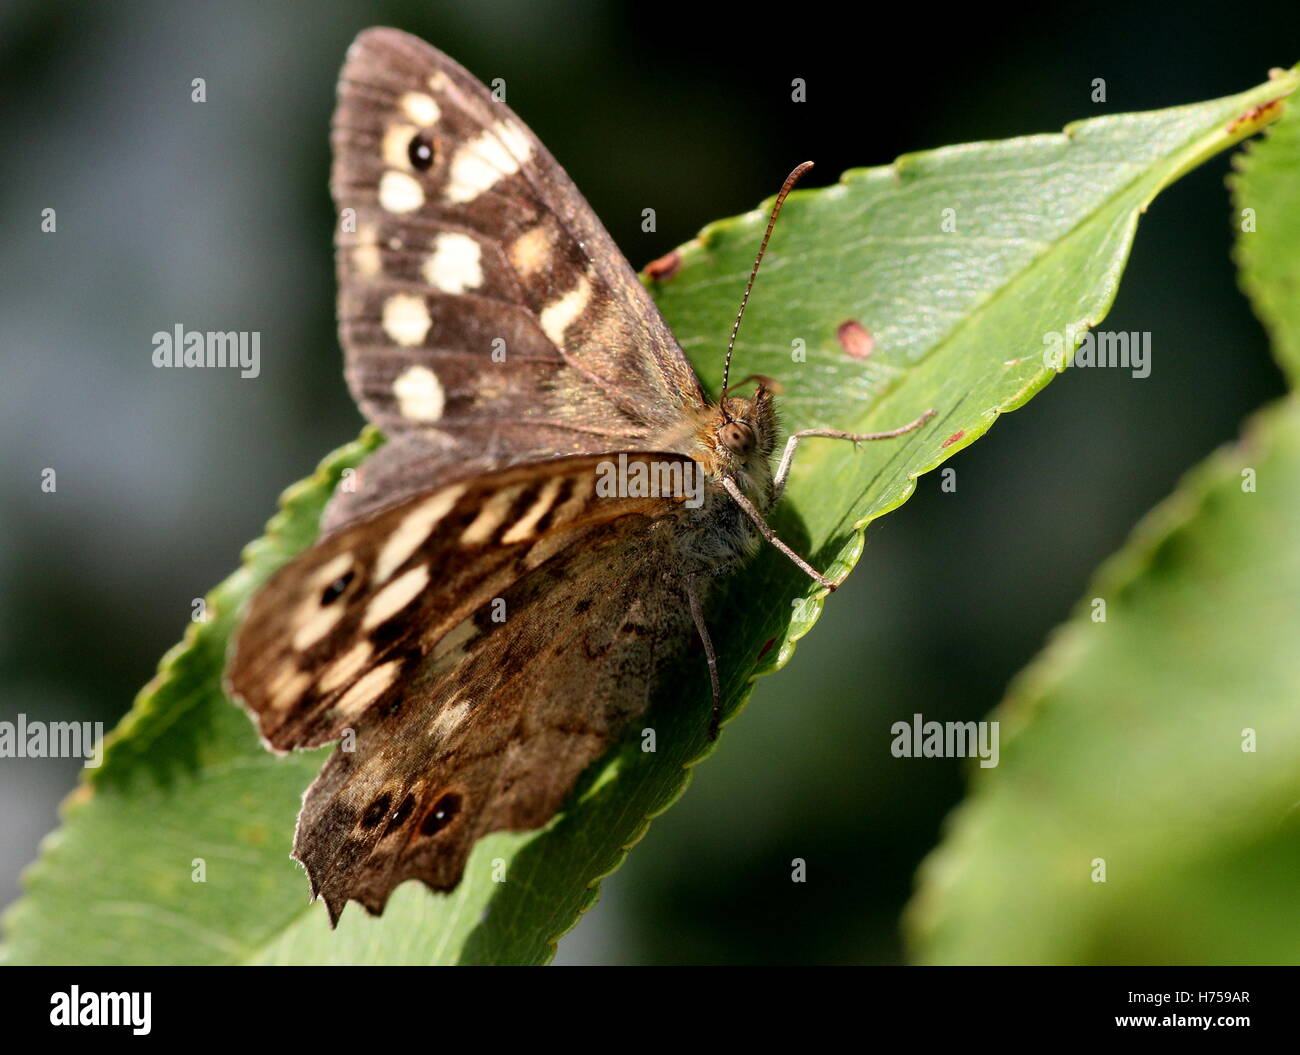 Weiblichen europäischen gesprenkelten Holz Schmetterling (Pararge Aegeria) posiert auf einem Blatt, Flügel geöffnet Stockfoto